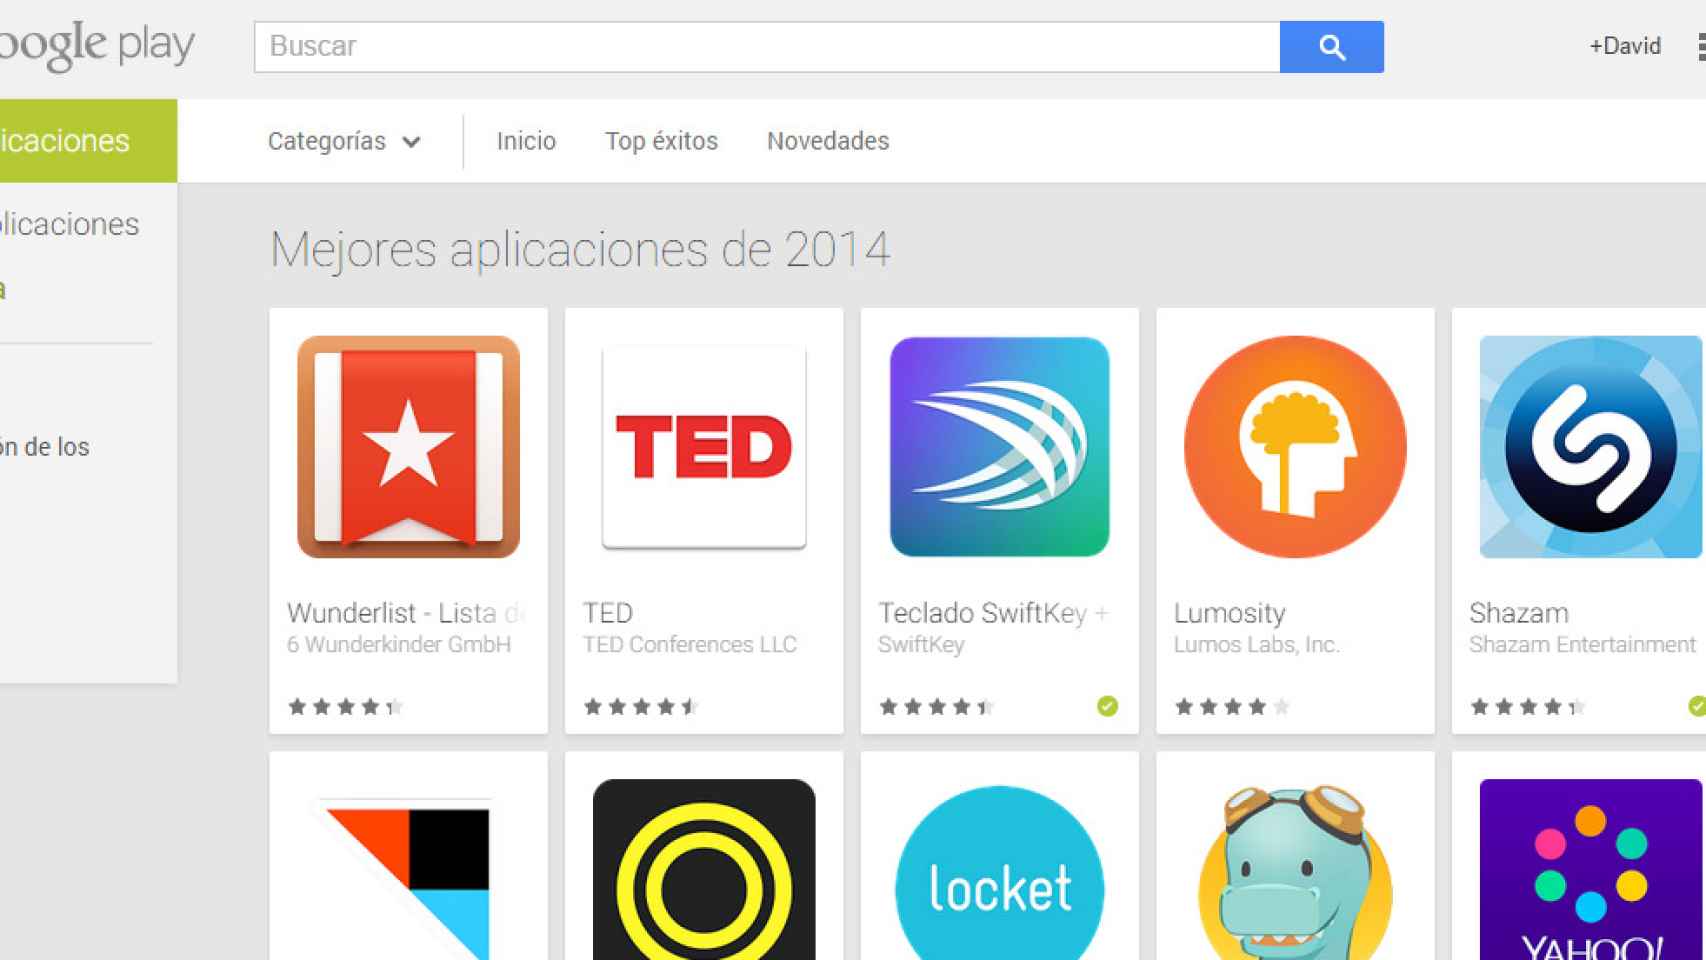 Las mejores aplicaciones Android de 2014 según Google